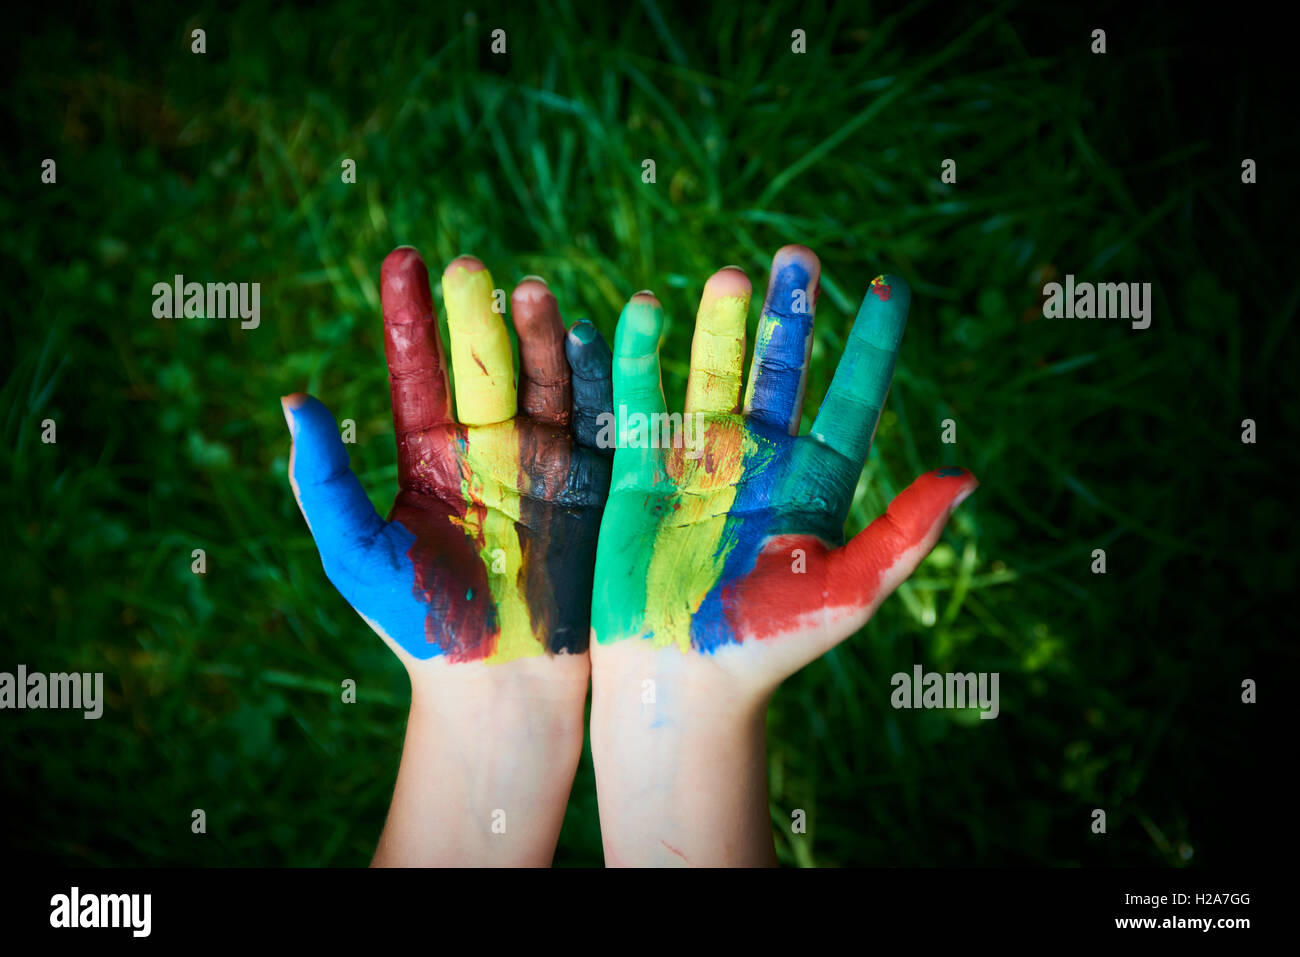 ein Kind mit den Fingern und Handflächen Farben malen. lustig und kreativ. Grasgrün Hintergrund Stockfoto